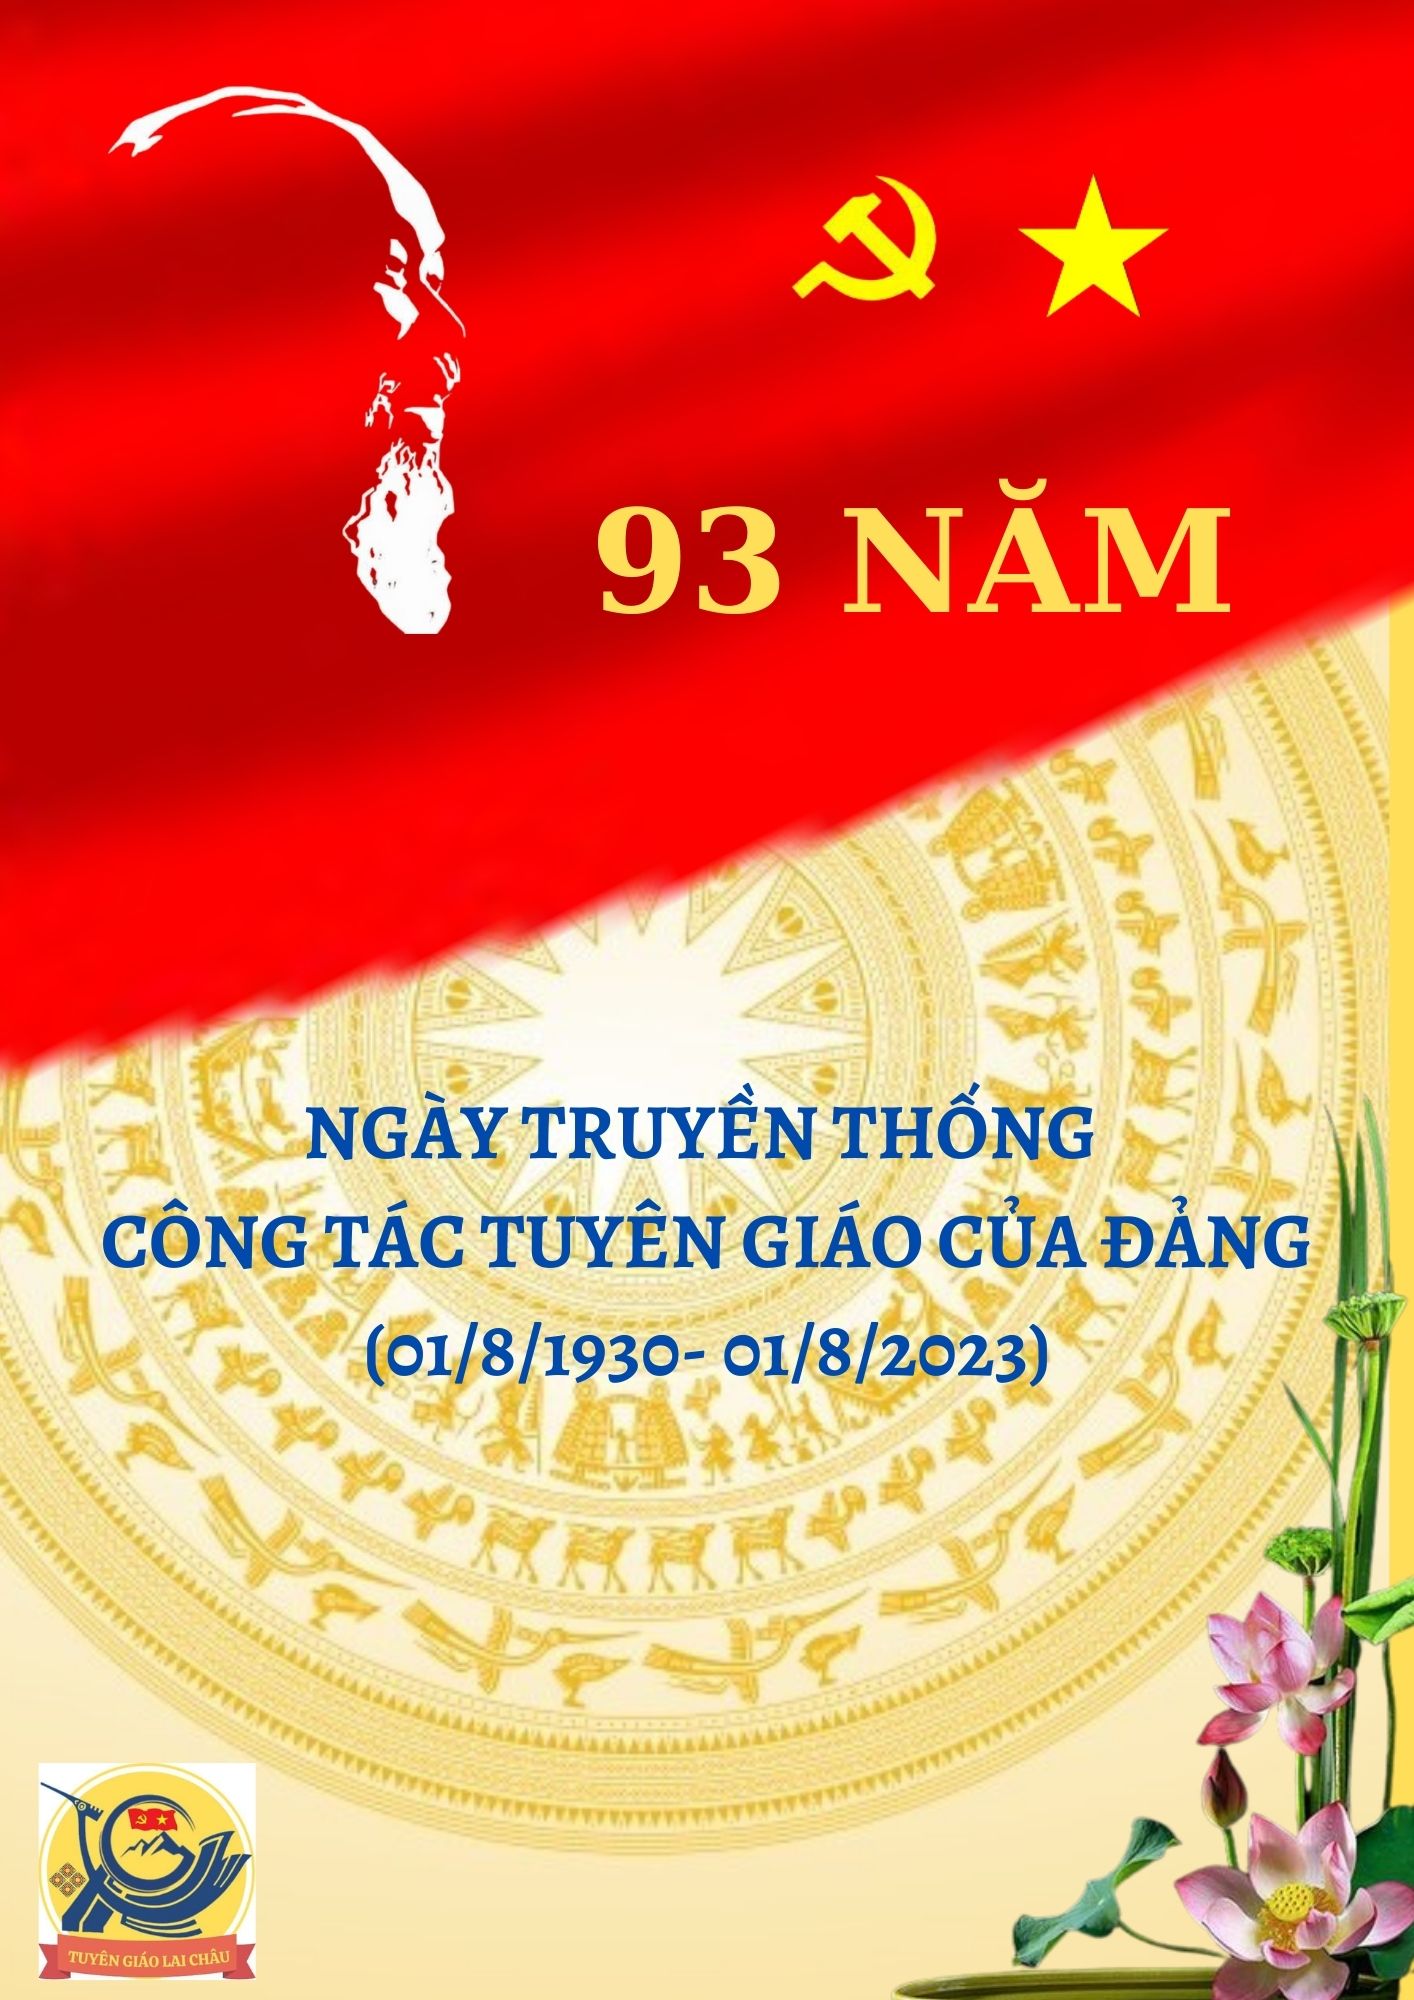 Kỷ niệm 93 năm Ngày truyền thống công tác Tuyên giáo của Đảng (01/8/1930-01/8/2023)